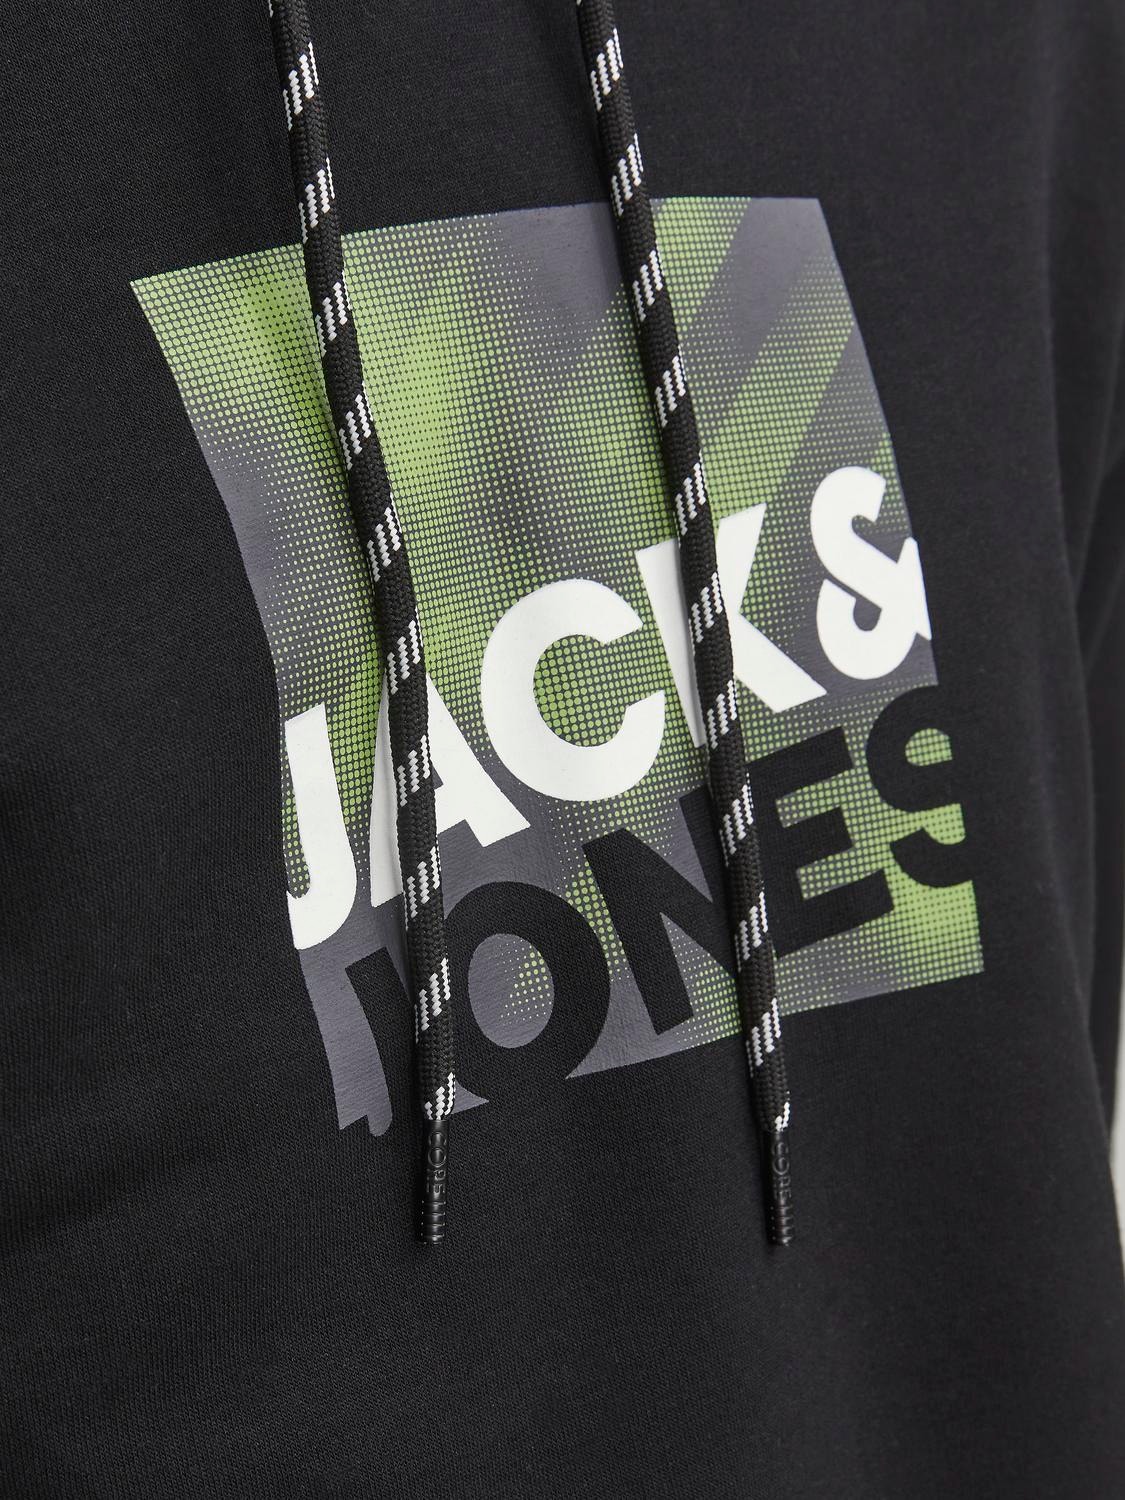 Jack & Jones Logo Hoodie -Black - 12246994